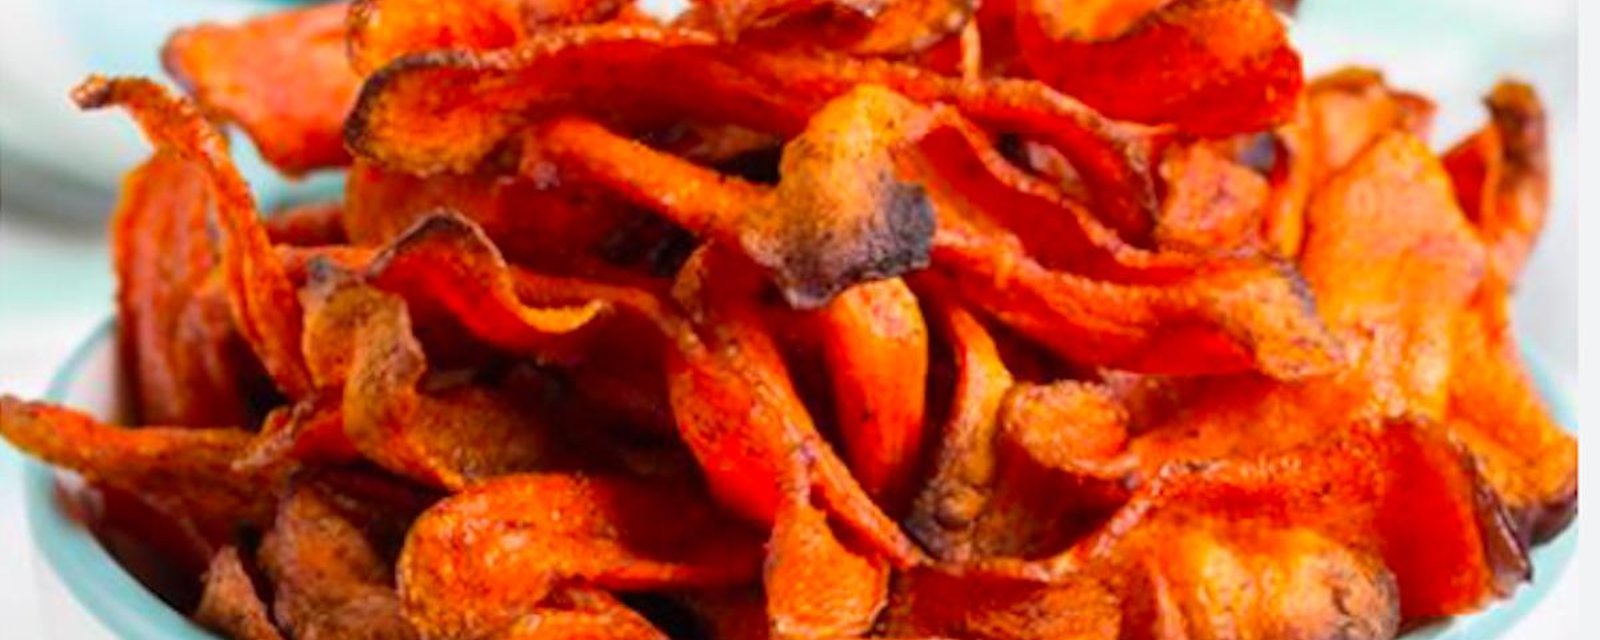 Envie d’une grignotine plus santé? Essayez ces croustilles de carottes faites maison!